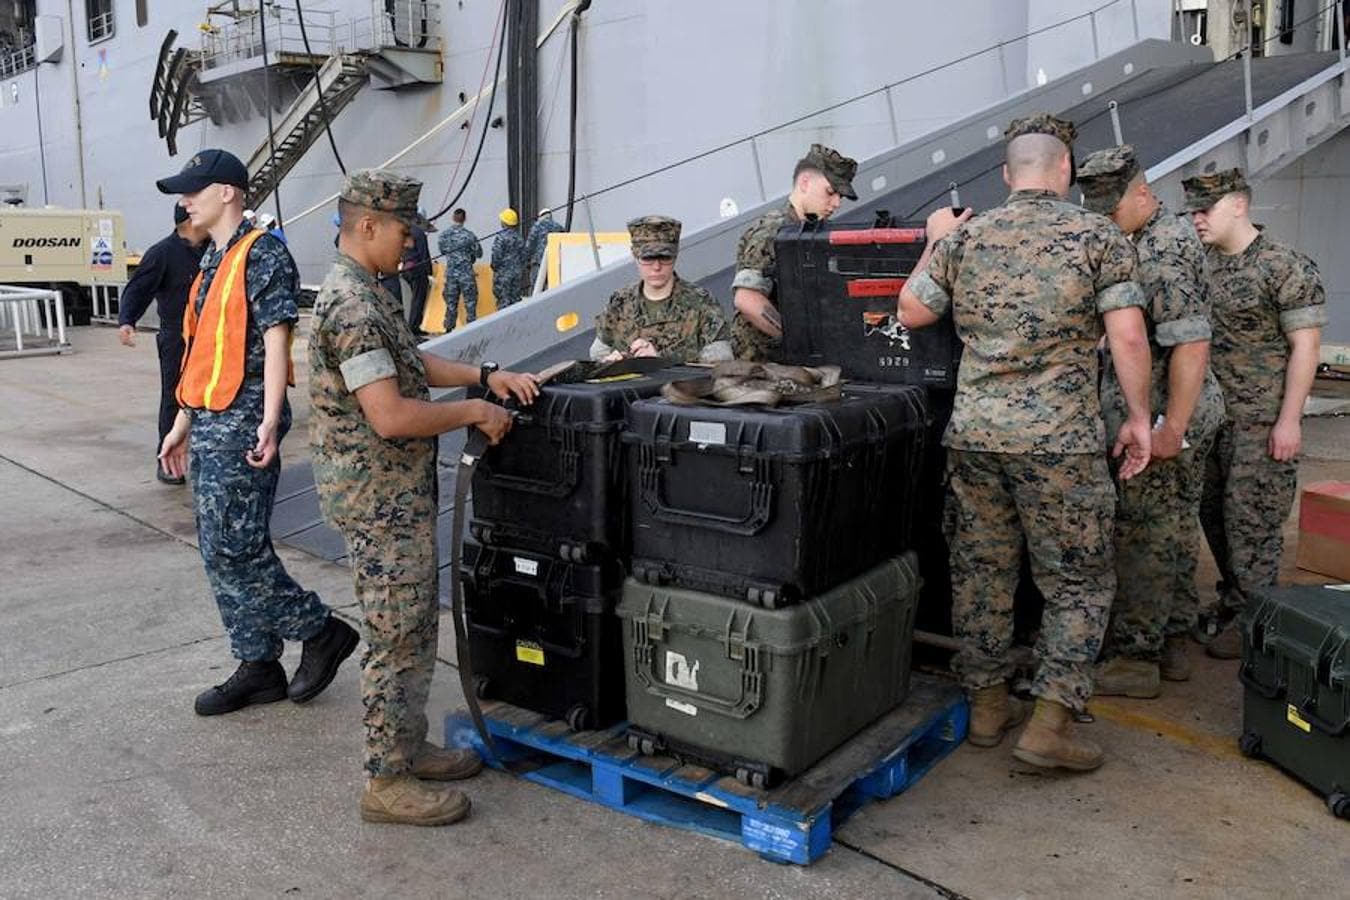 Miembros del cuerpo de marines toman precauciones respecto al equipo de su barco, antes de que llegue el huracán a Florida